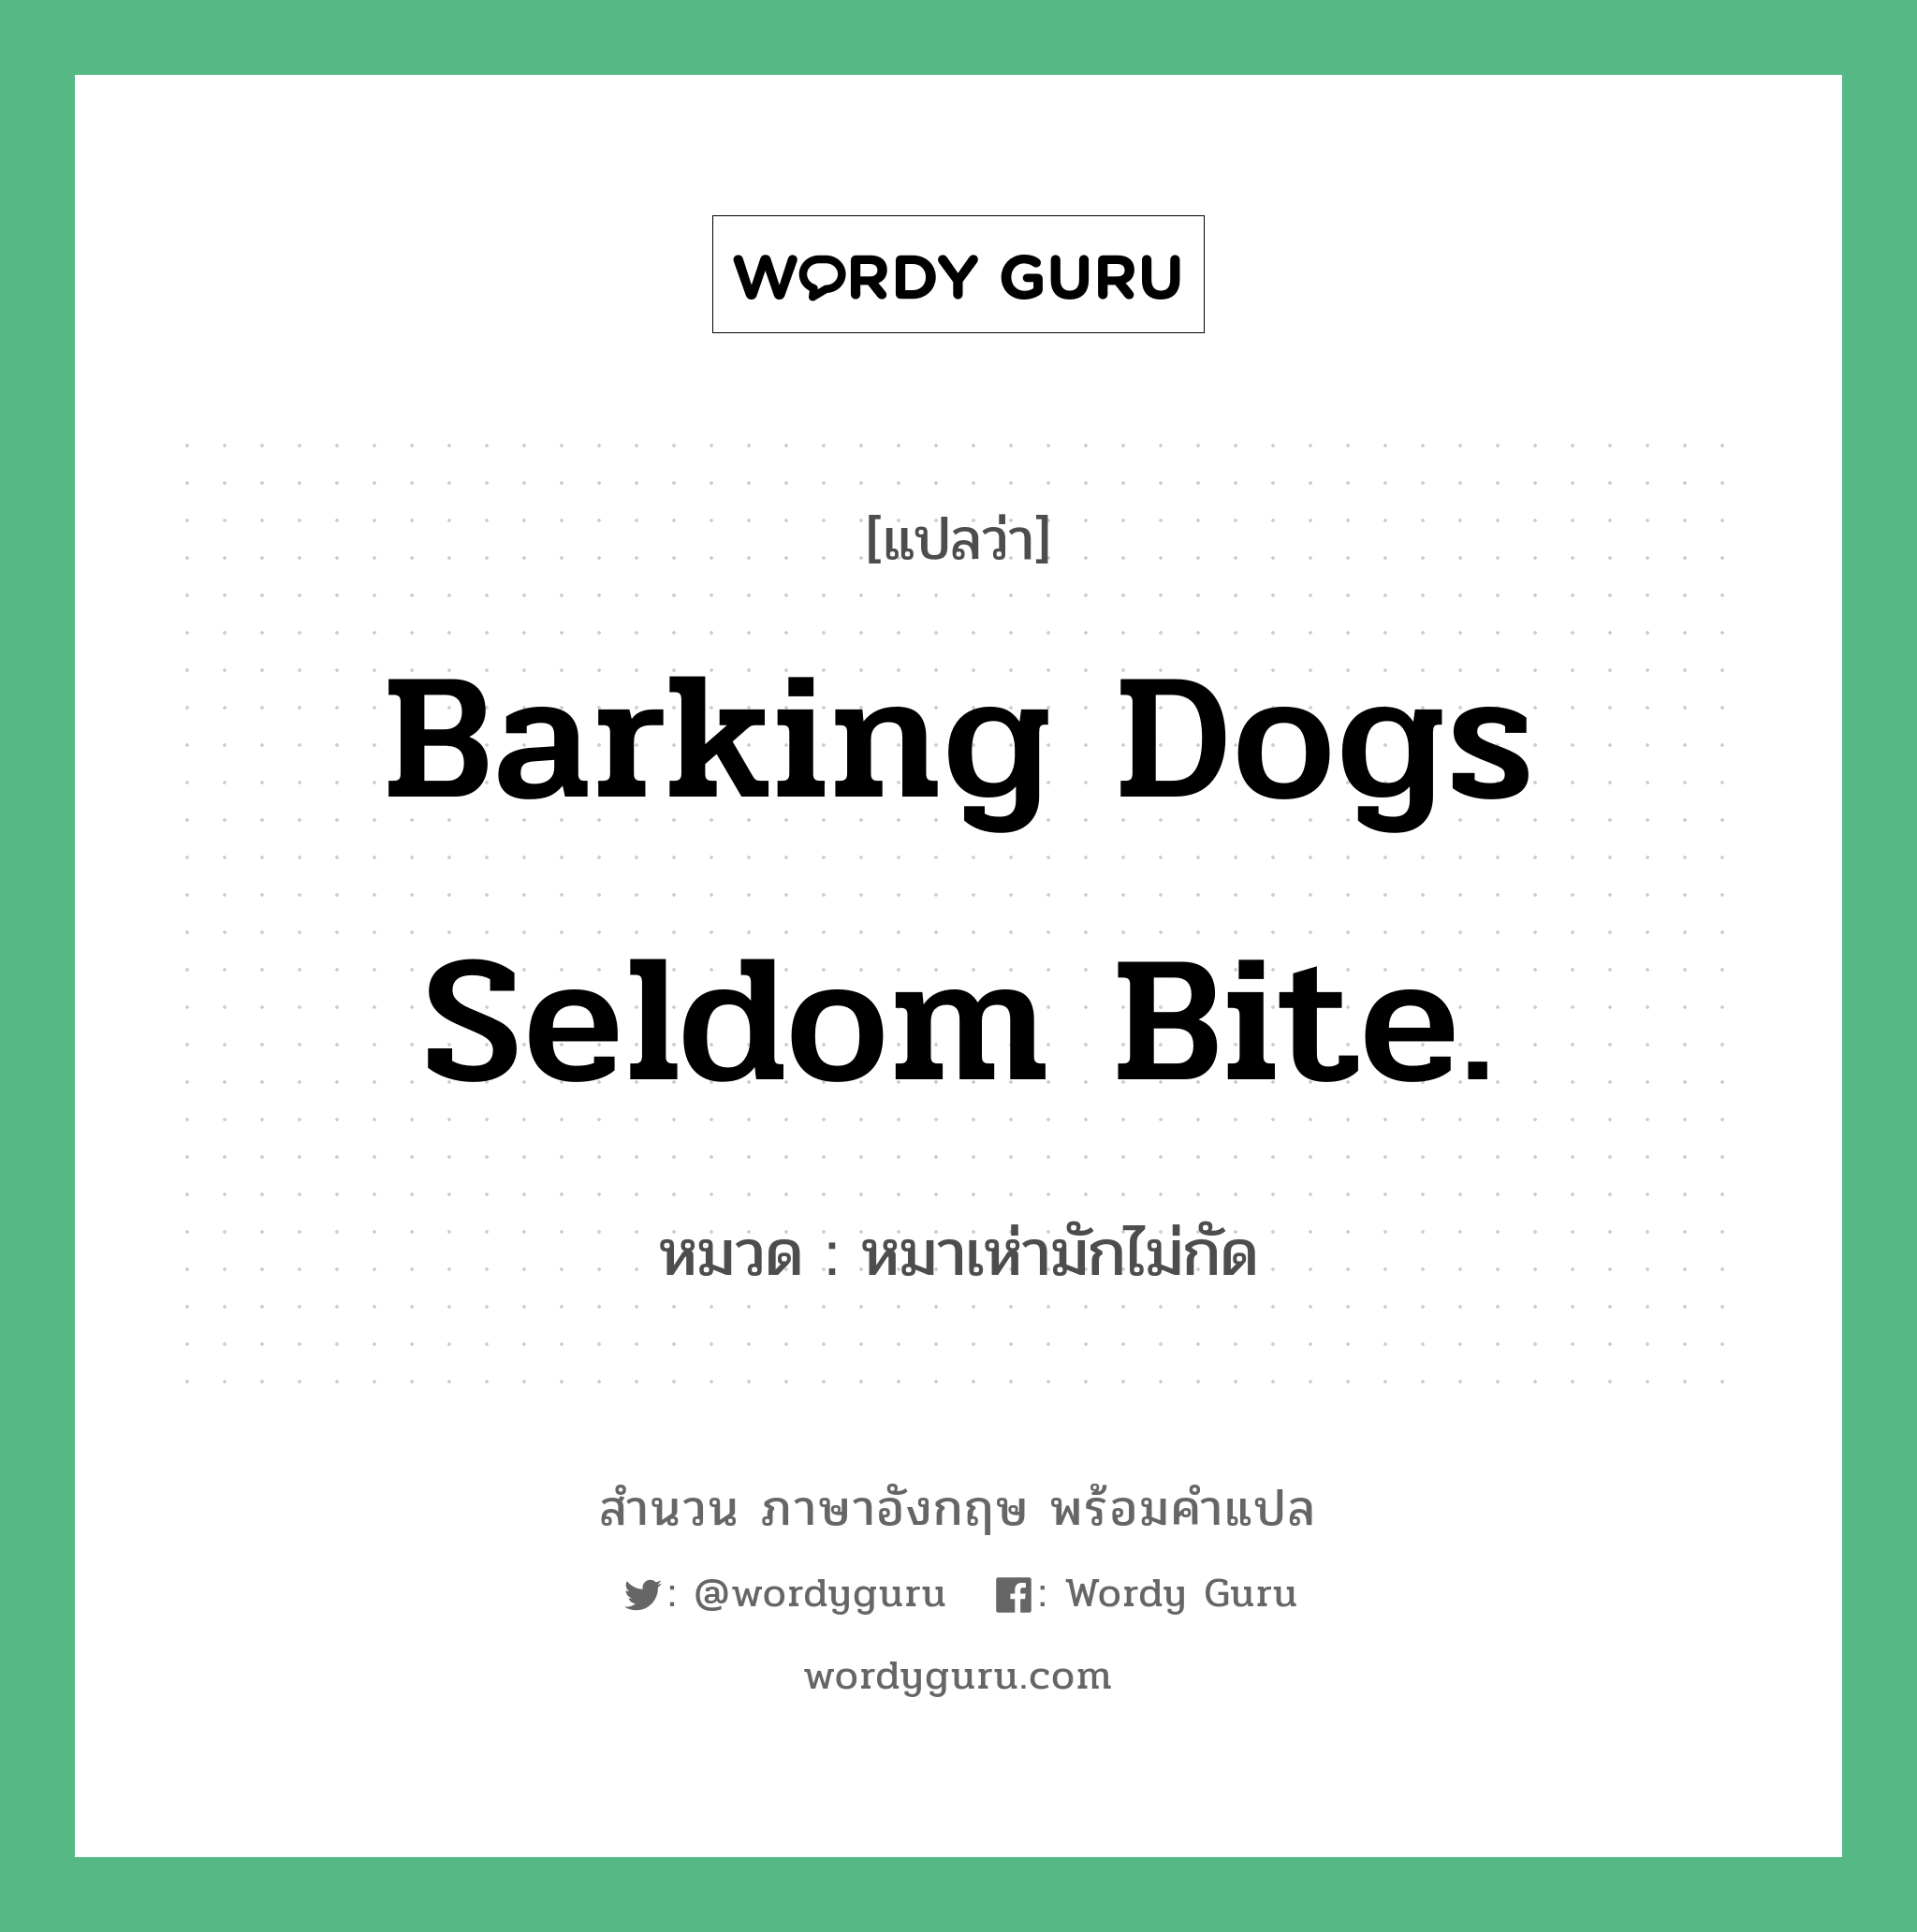 หมาเห่ามักไม่กัด ภาษาอังกฤษ?, สำนวนภาษาอังกฤษ หมาเห่ามักไม่กัด แปลว่า หมาเห่ามักไม่กัด หมวด Barking dogs seldom bite. คำสุภาษิต ภาษาอังกฤษ หมวด คำสุภาษิต ภาษาอังกฤษ